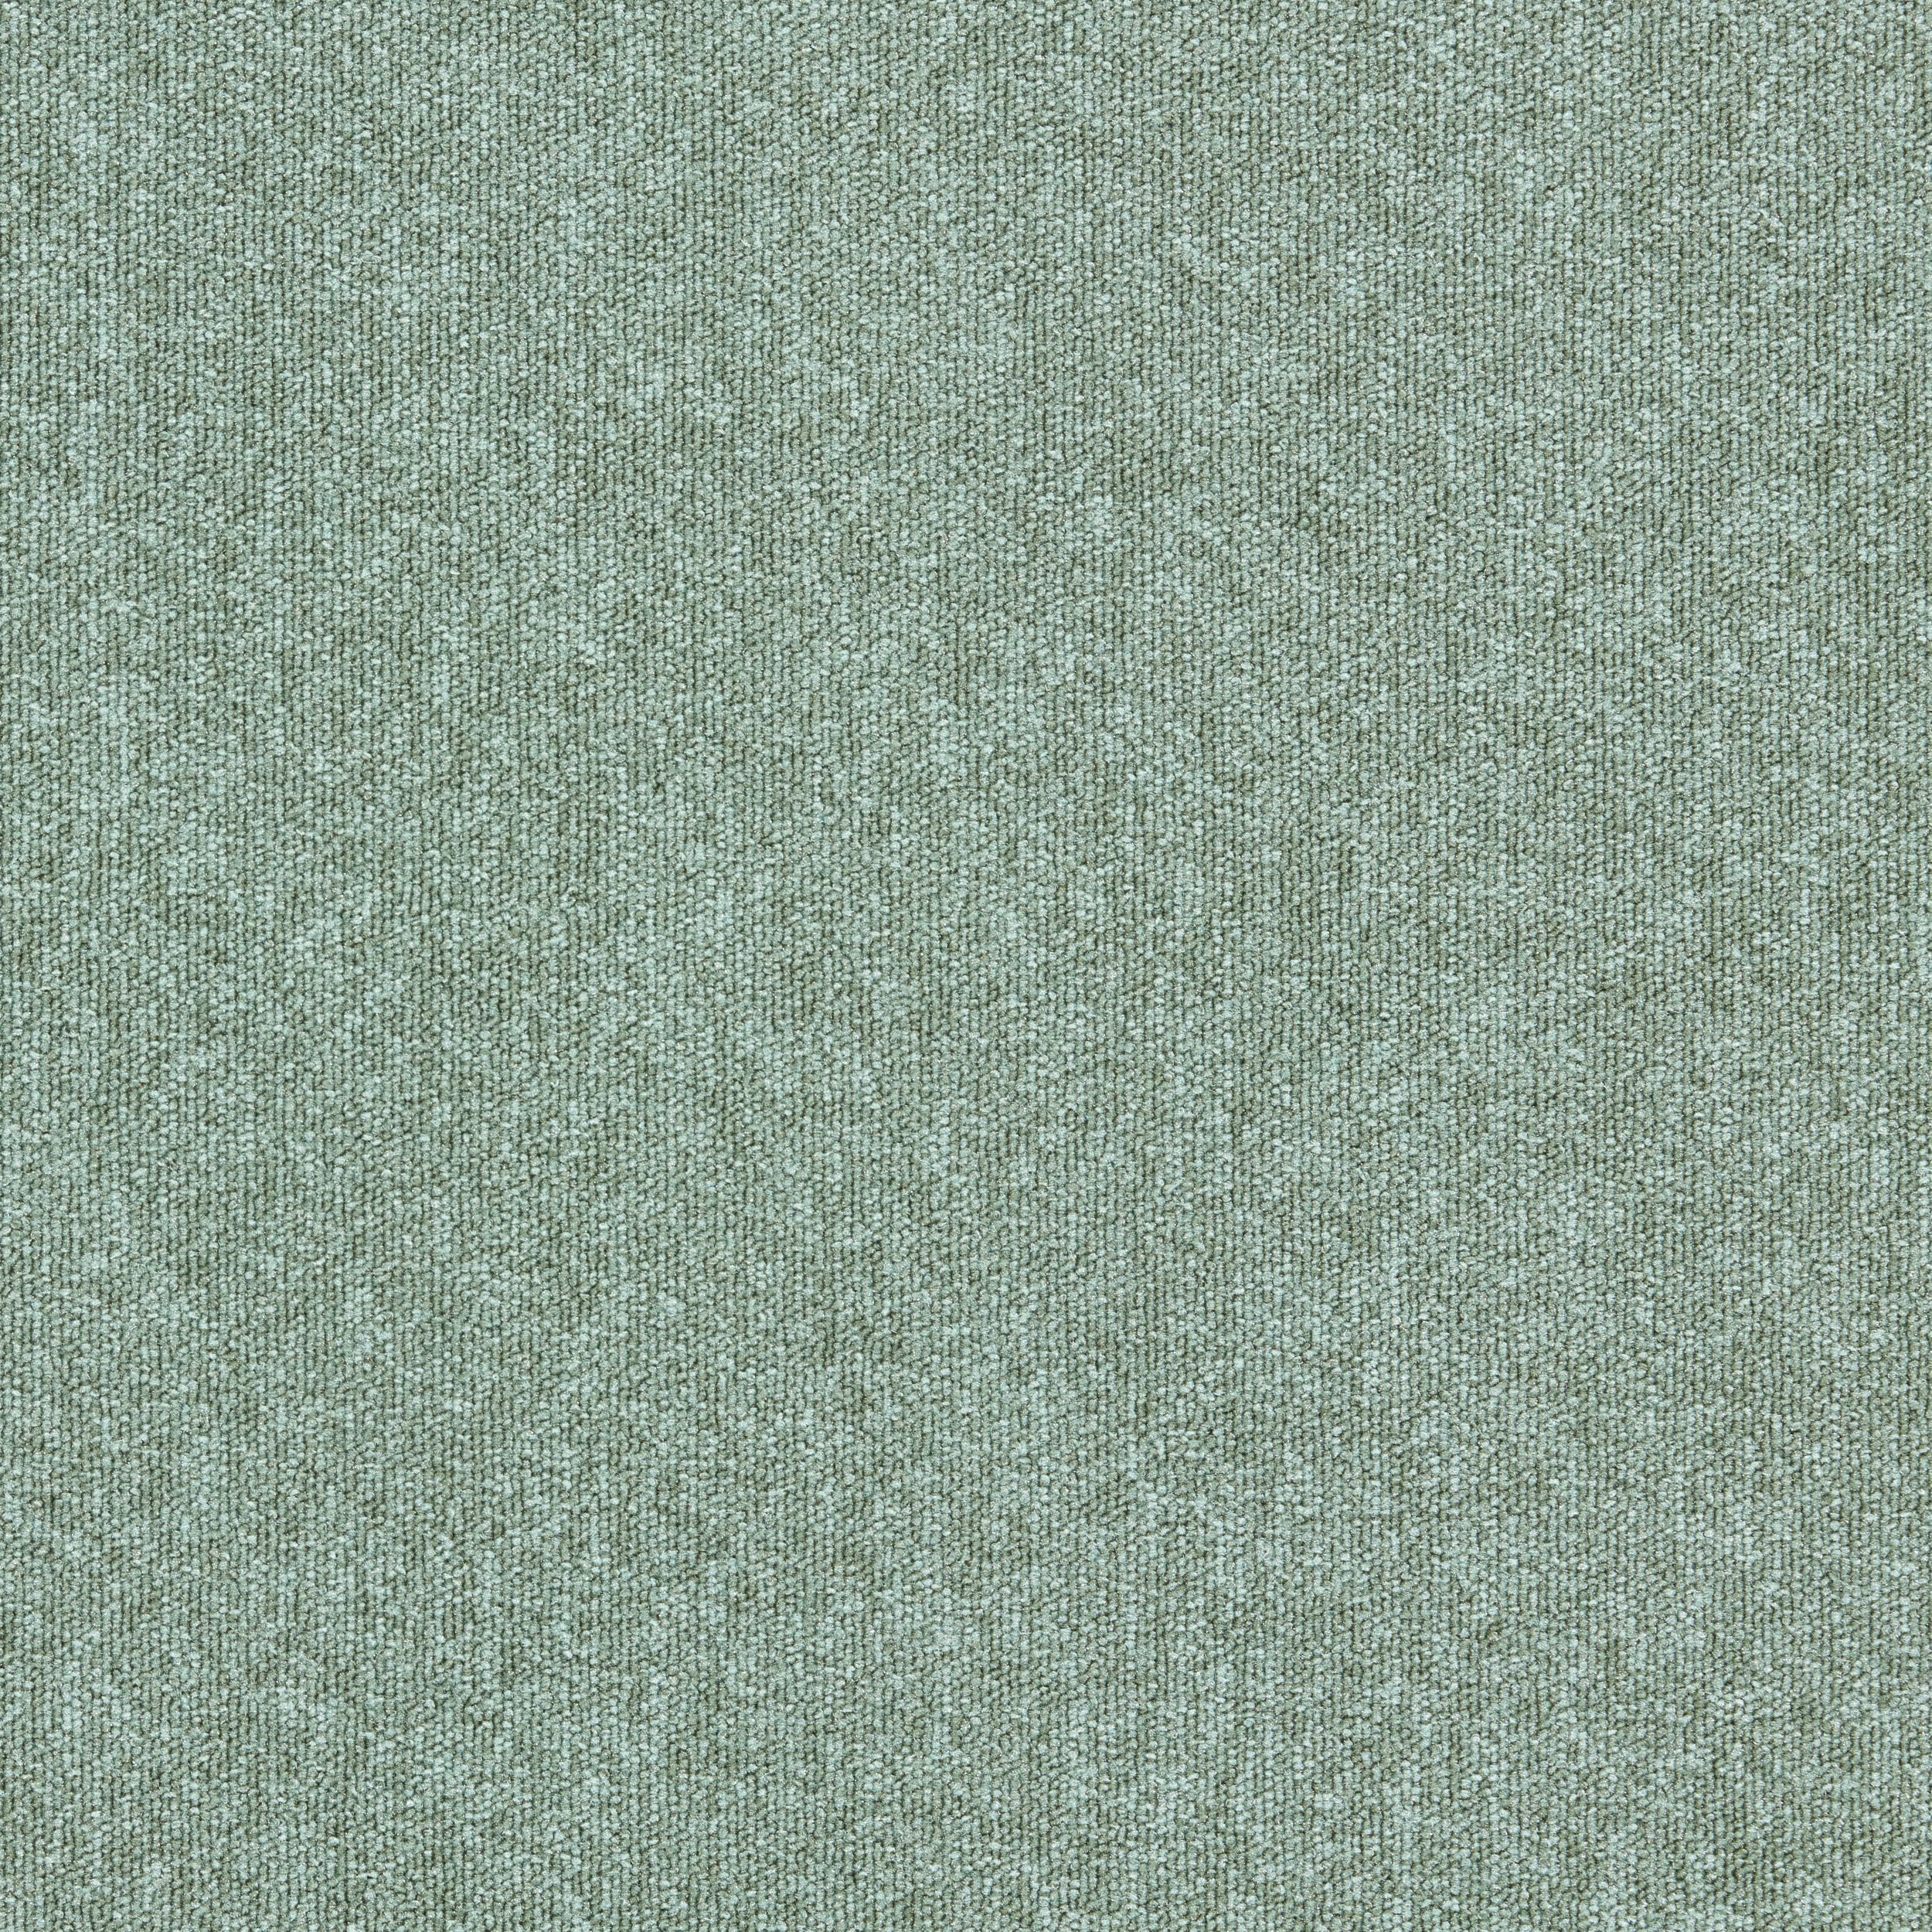 Heuga 580 II carpet tile in Laurel número de imagen 2